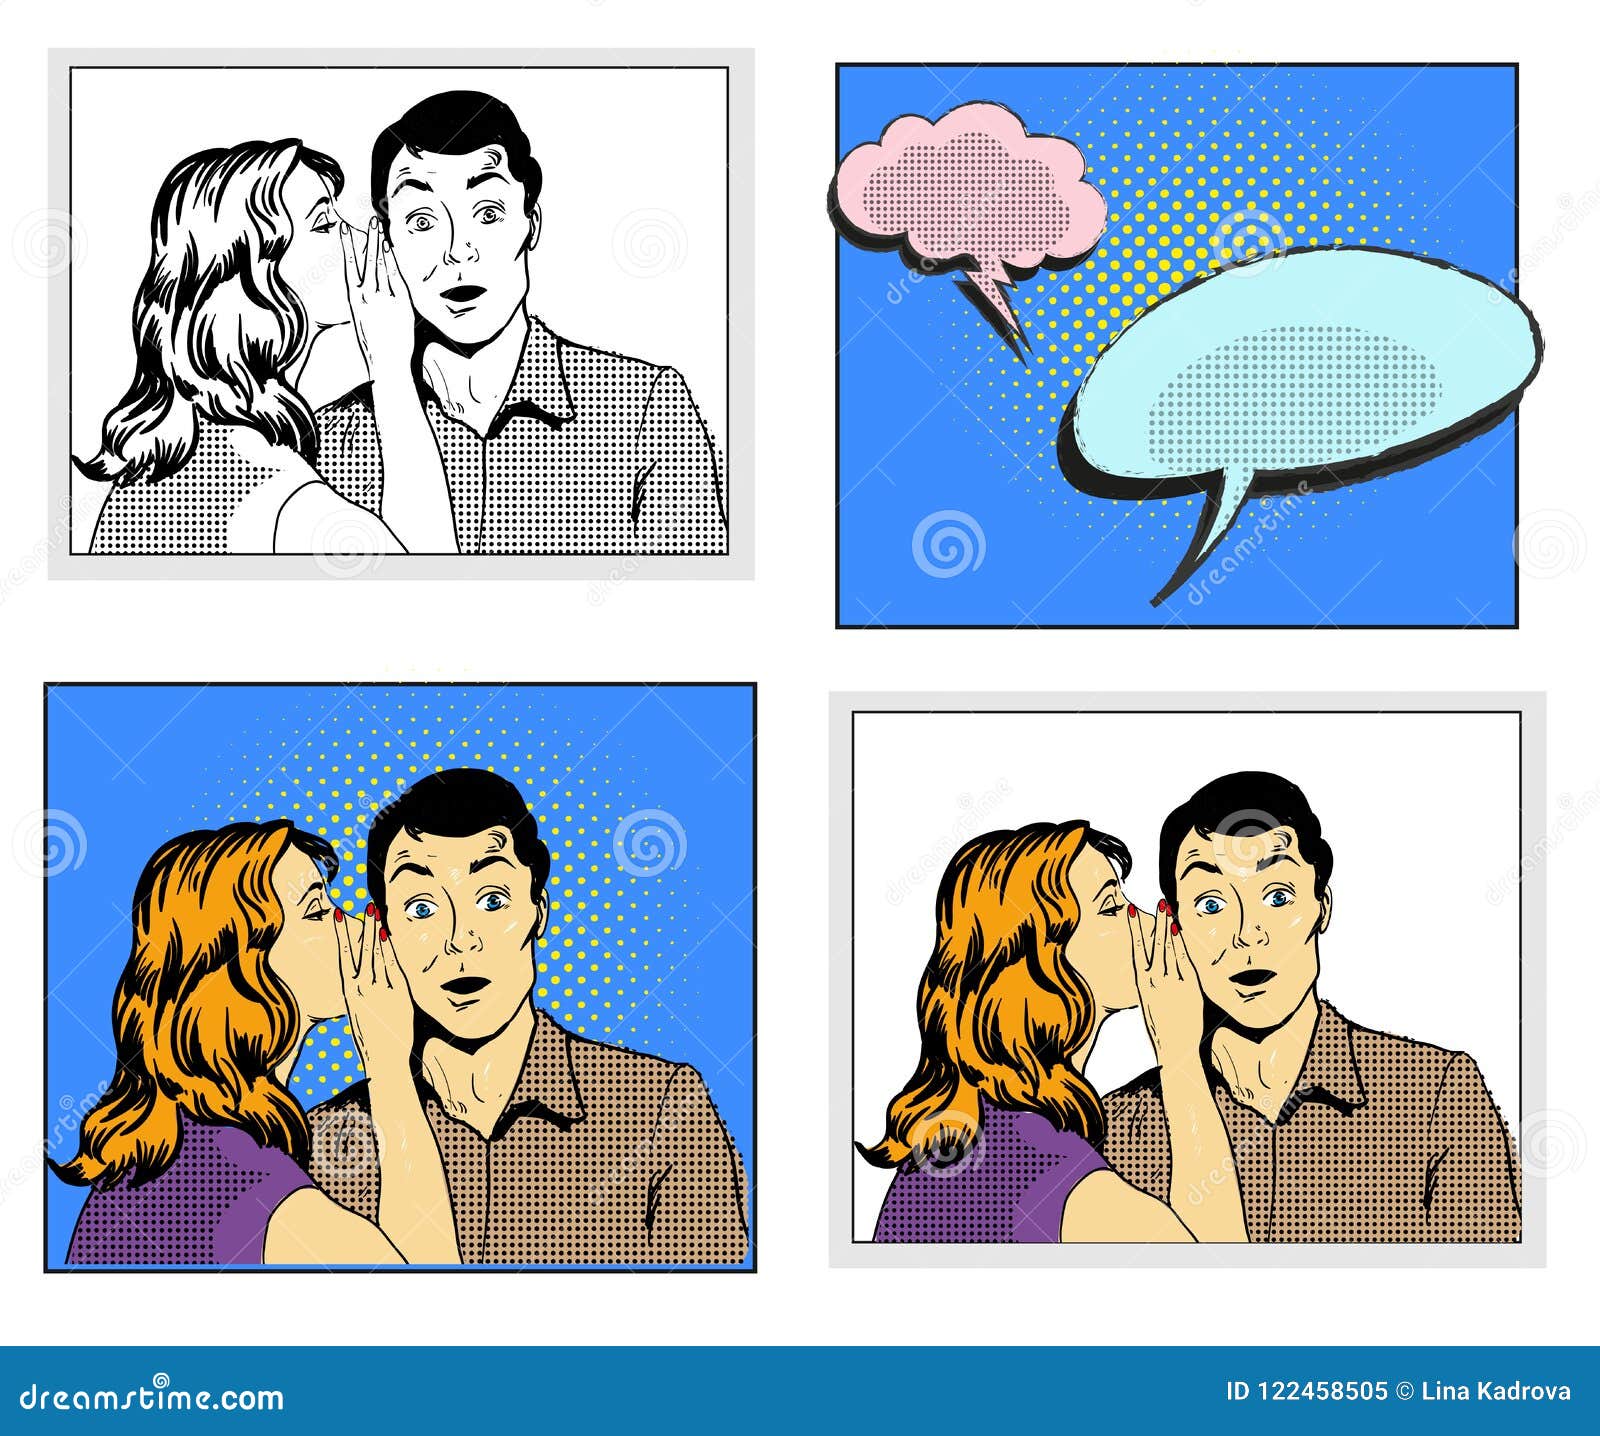 Mannen och kvinnan viskar illustrationen för vektorn för stil för popkonst den komiska retro i svartvita och färgrika versioner med anförandebubblor på rastrerad bakgrund